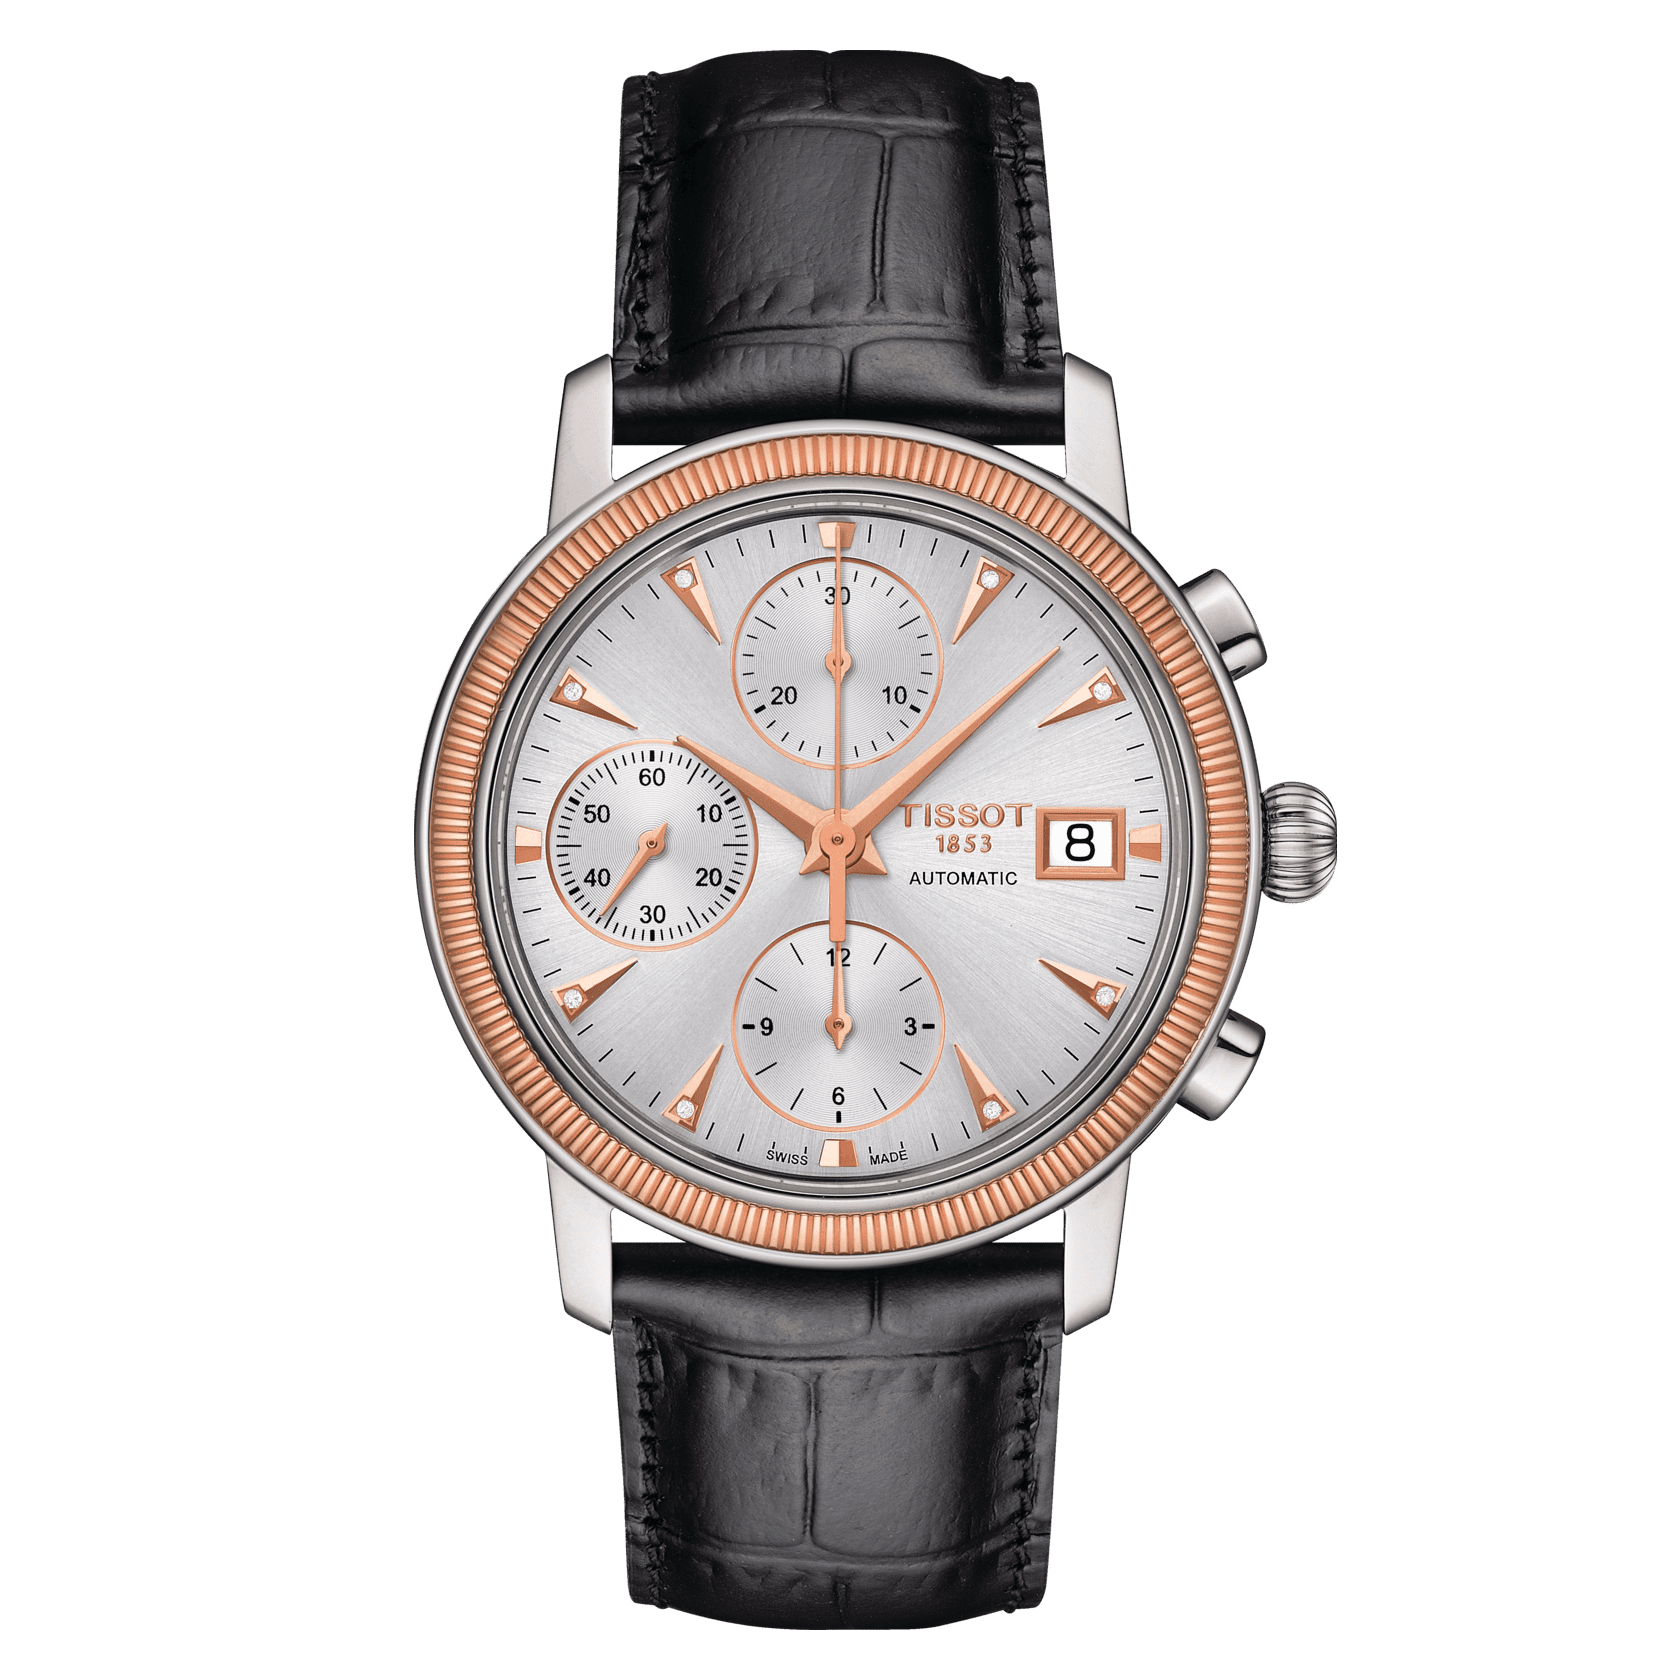 Designer Fake Luxury Watches